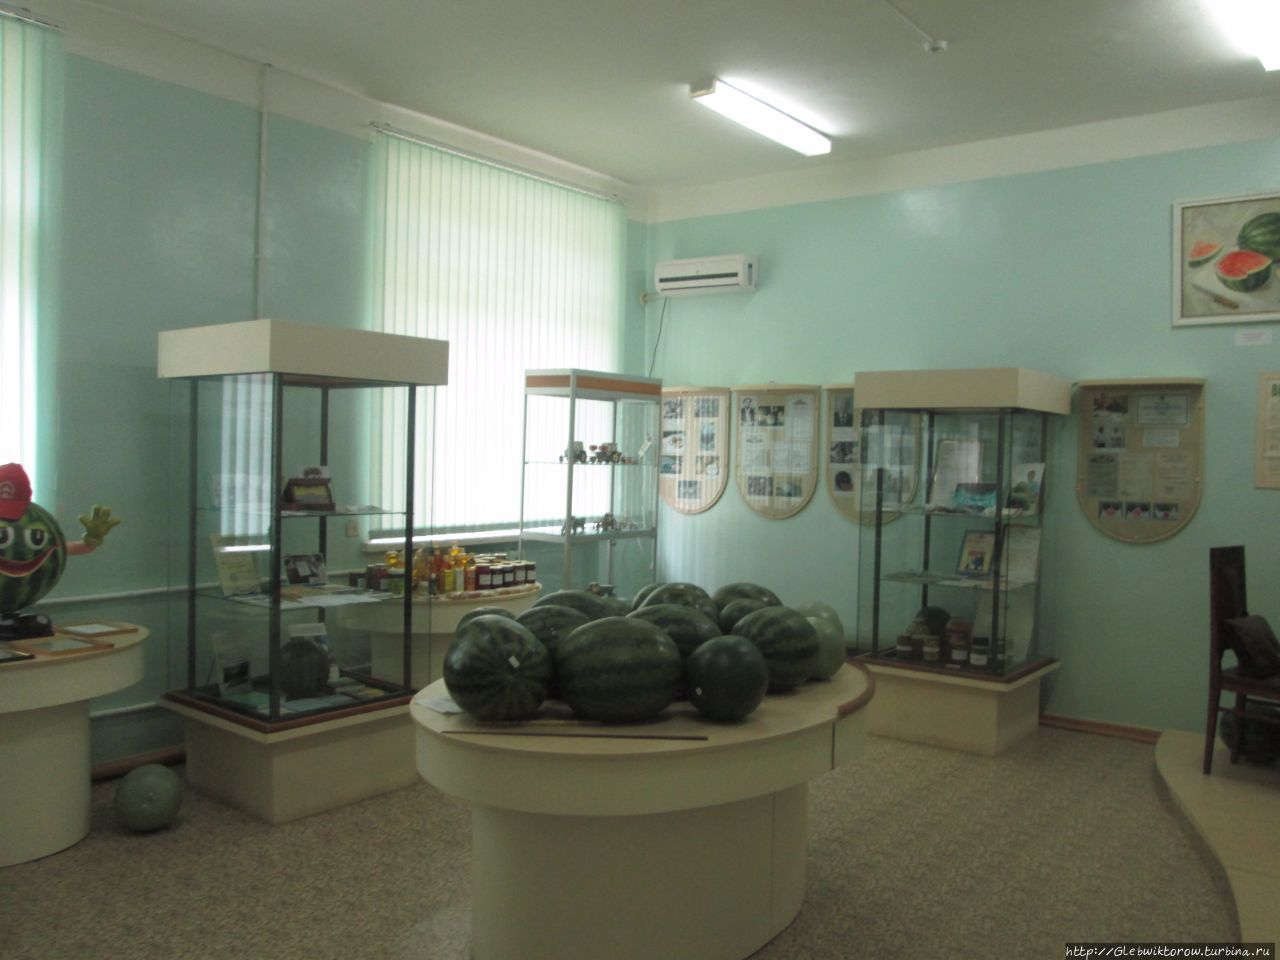 Музей арбуза Камызяк, Россия